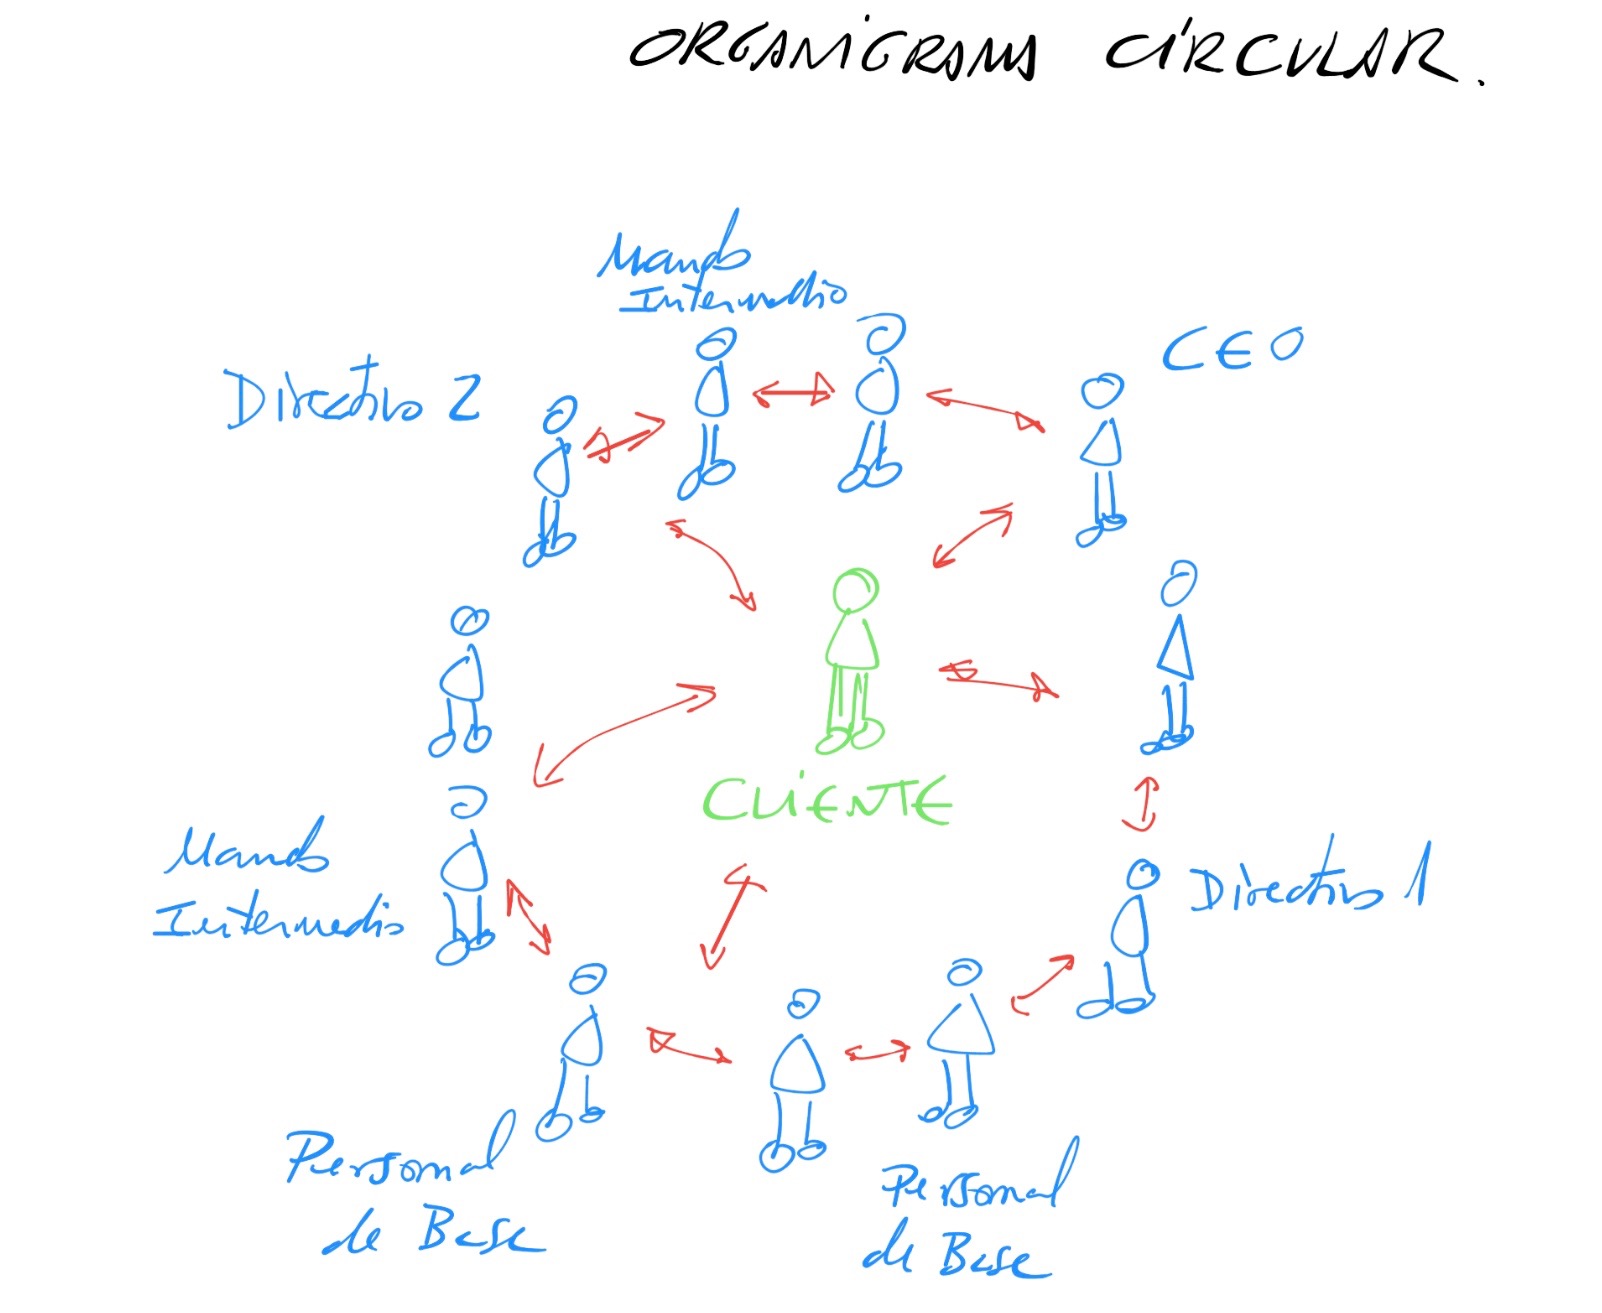 El organigrama circular - César Piqueras